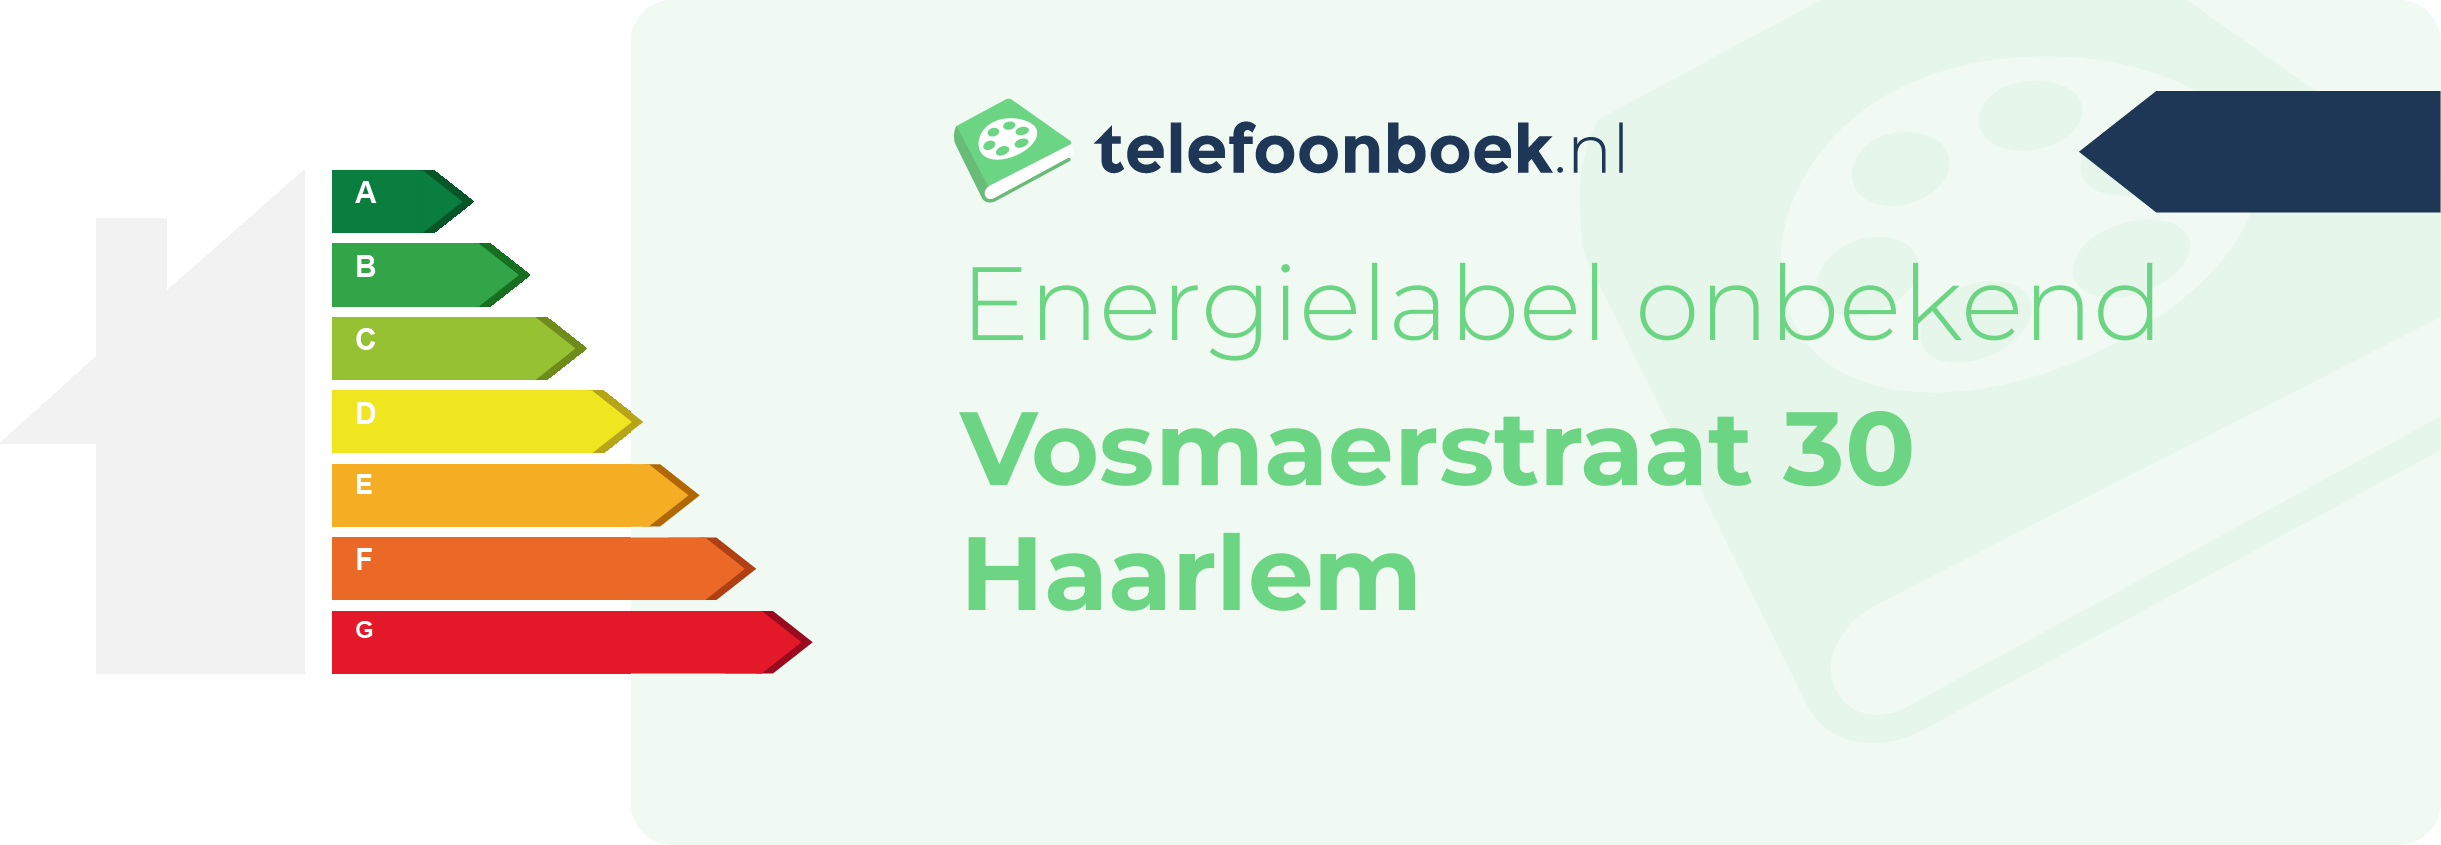 Energielabel Vosmaerstraat 30 Haarlem